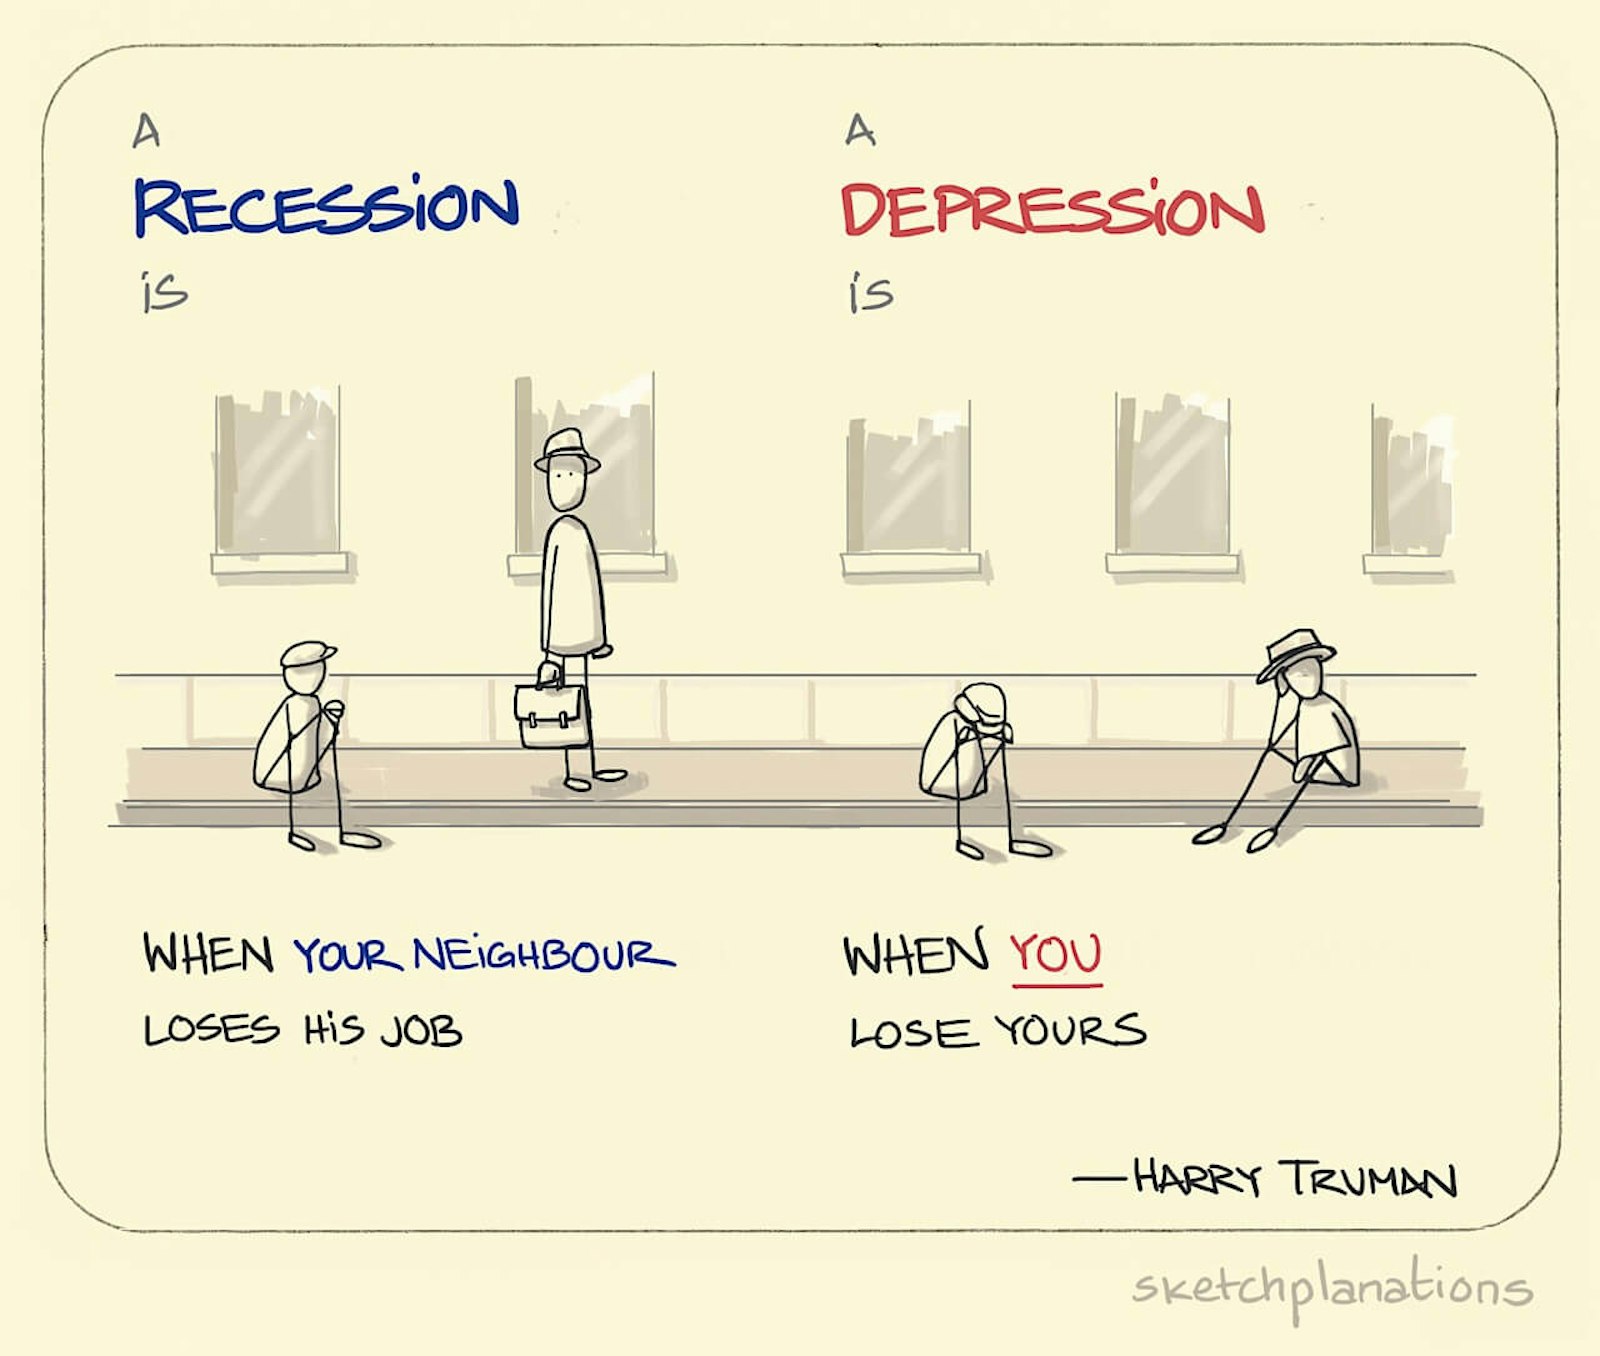 Recession vs depression Sketchplanations